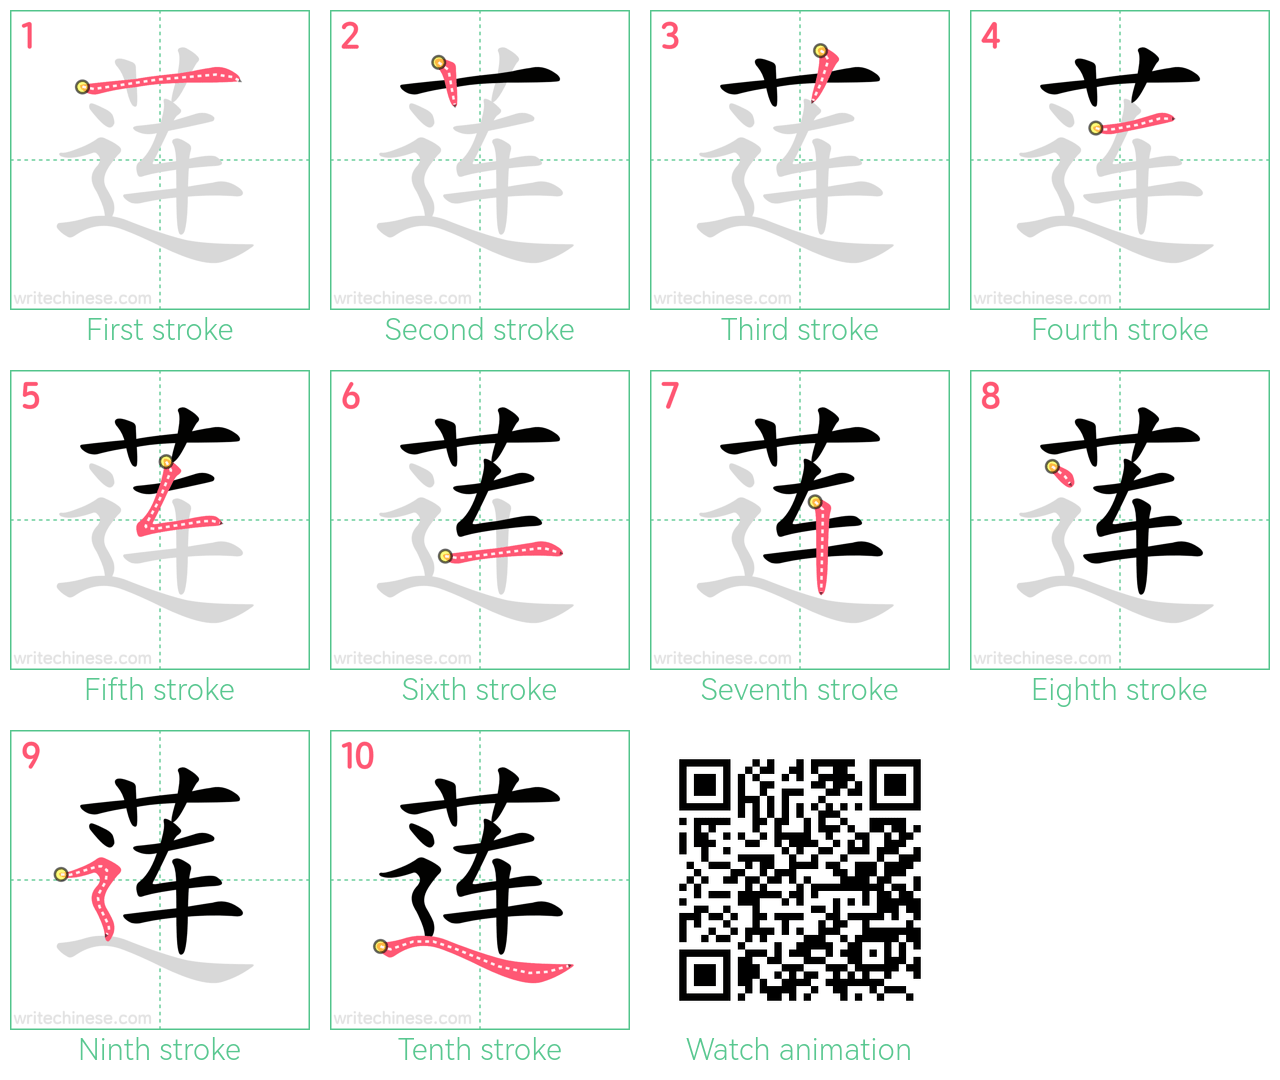 莲 step-by-step stroke order diagrams